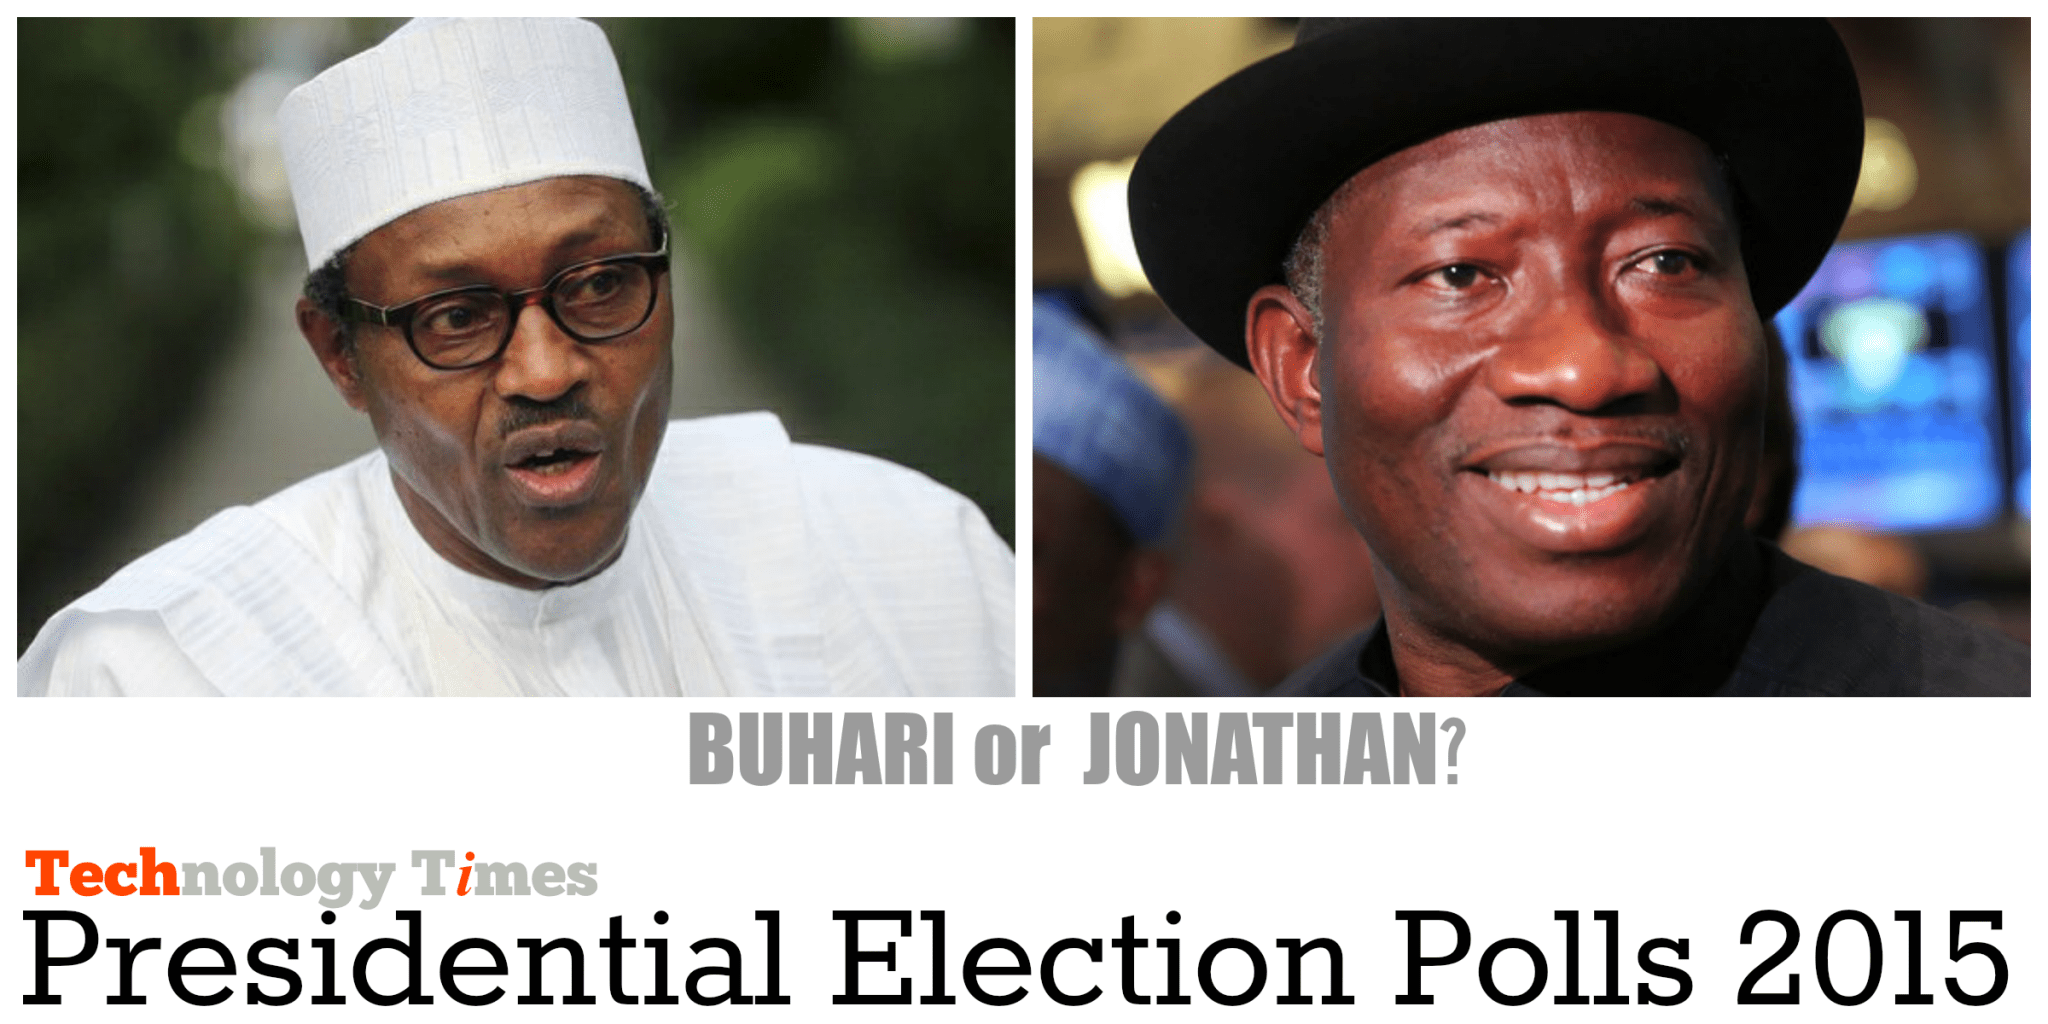 Buhari or Jonathan